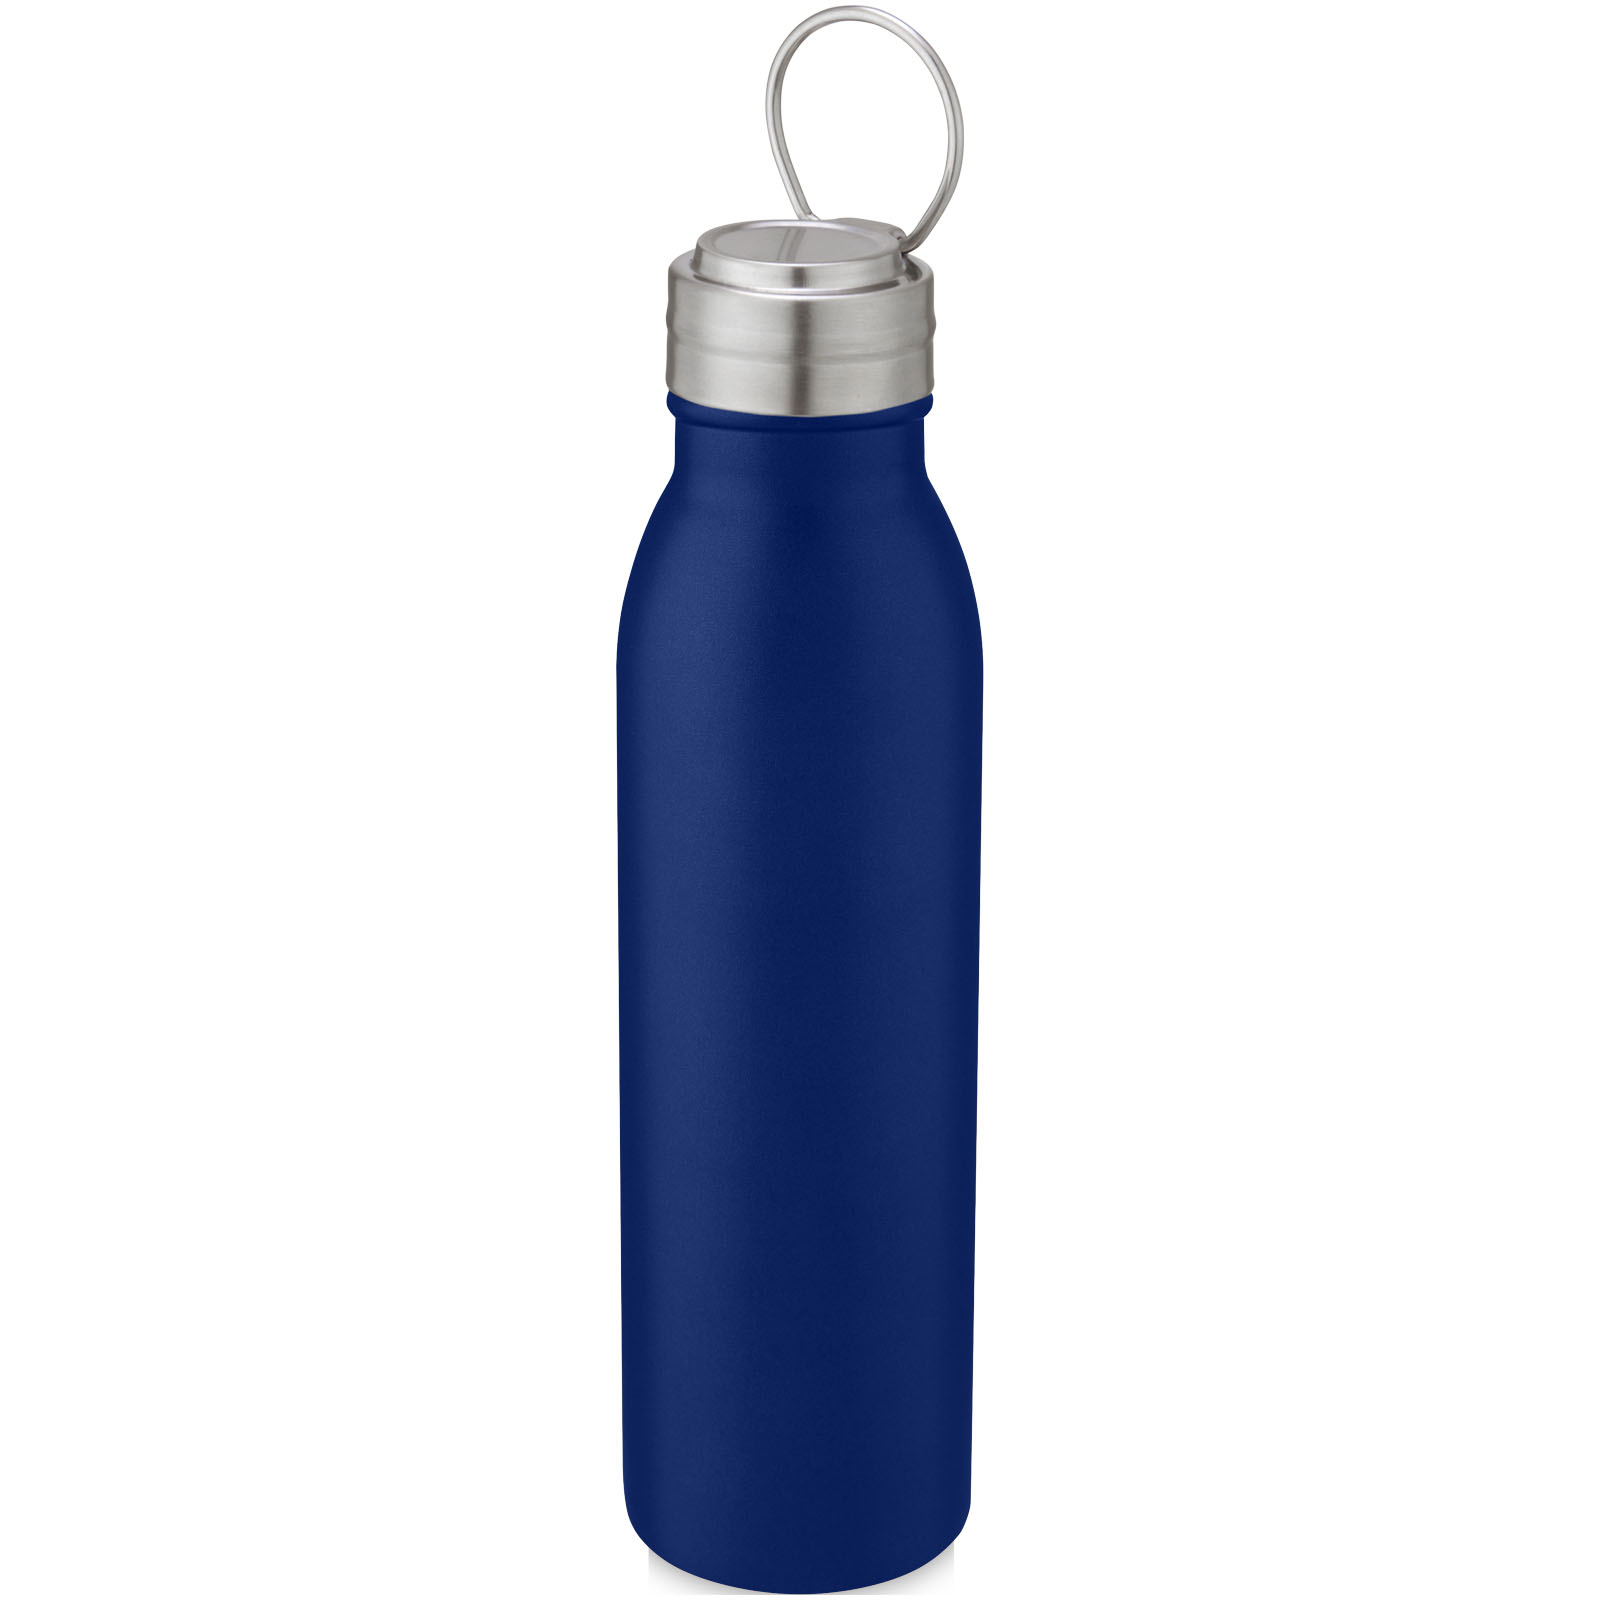 Advertising Water bottles - Harper 700 ml stainless steel water bottle with metal loop - 3